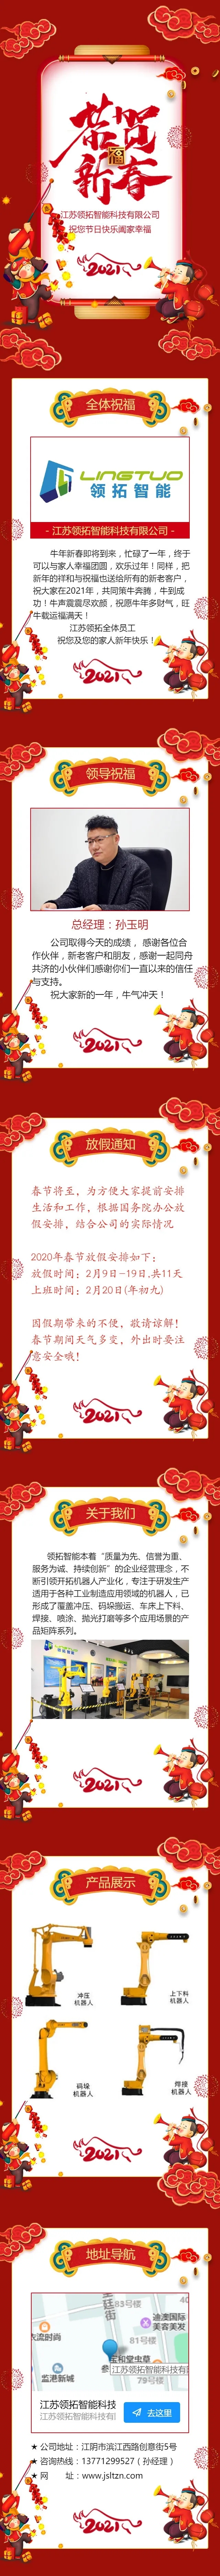 【领拓智能】江苏领拓携全体员工，提前祝大家新春快乐、阖家幸福!